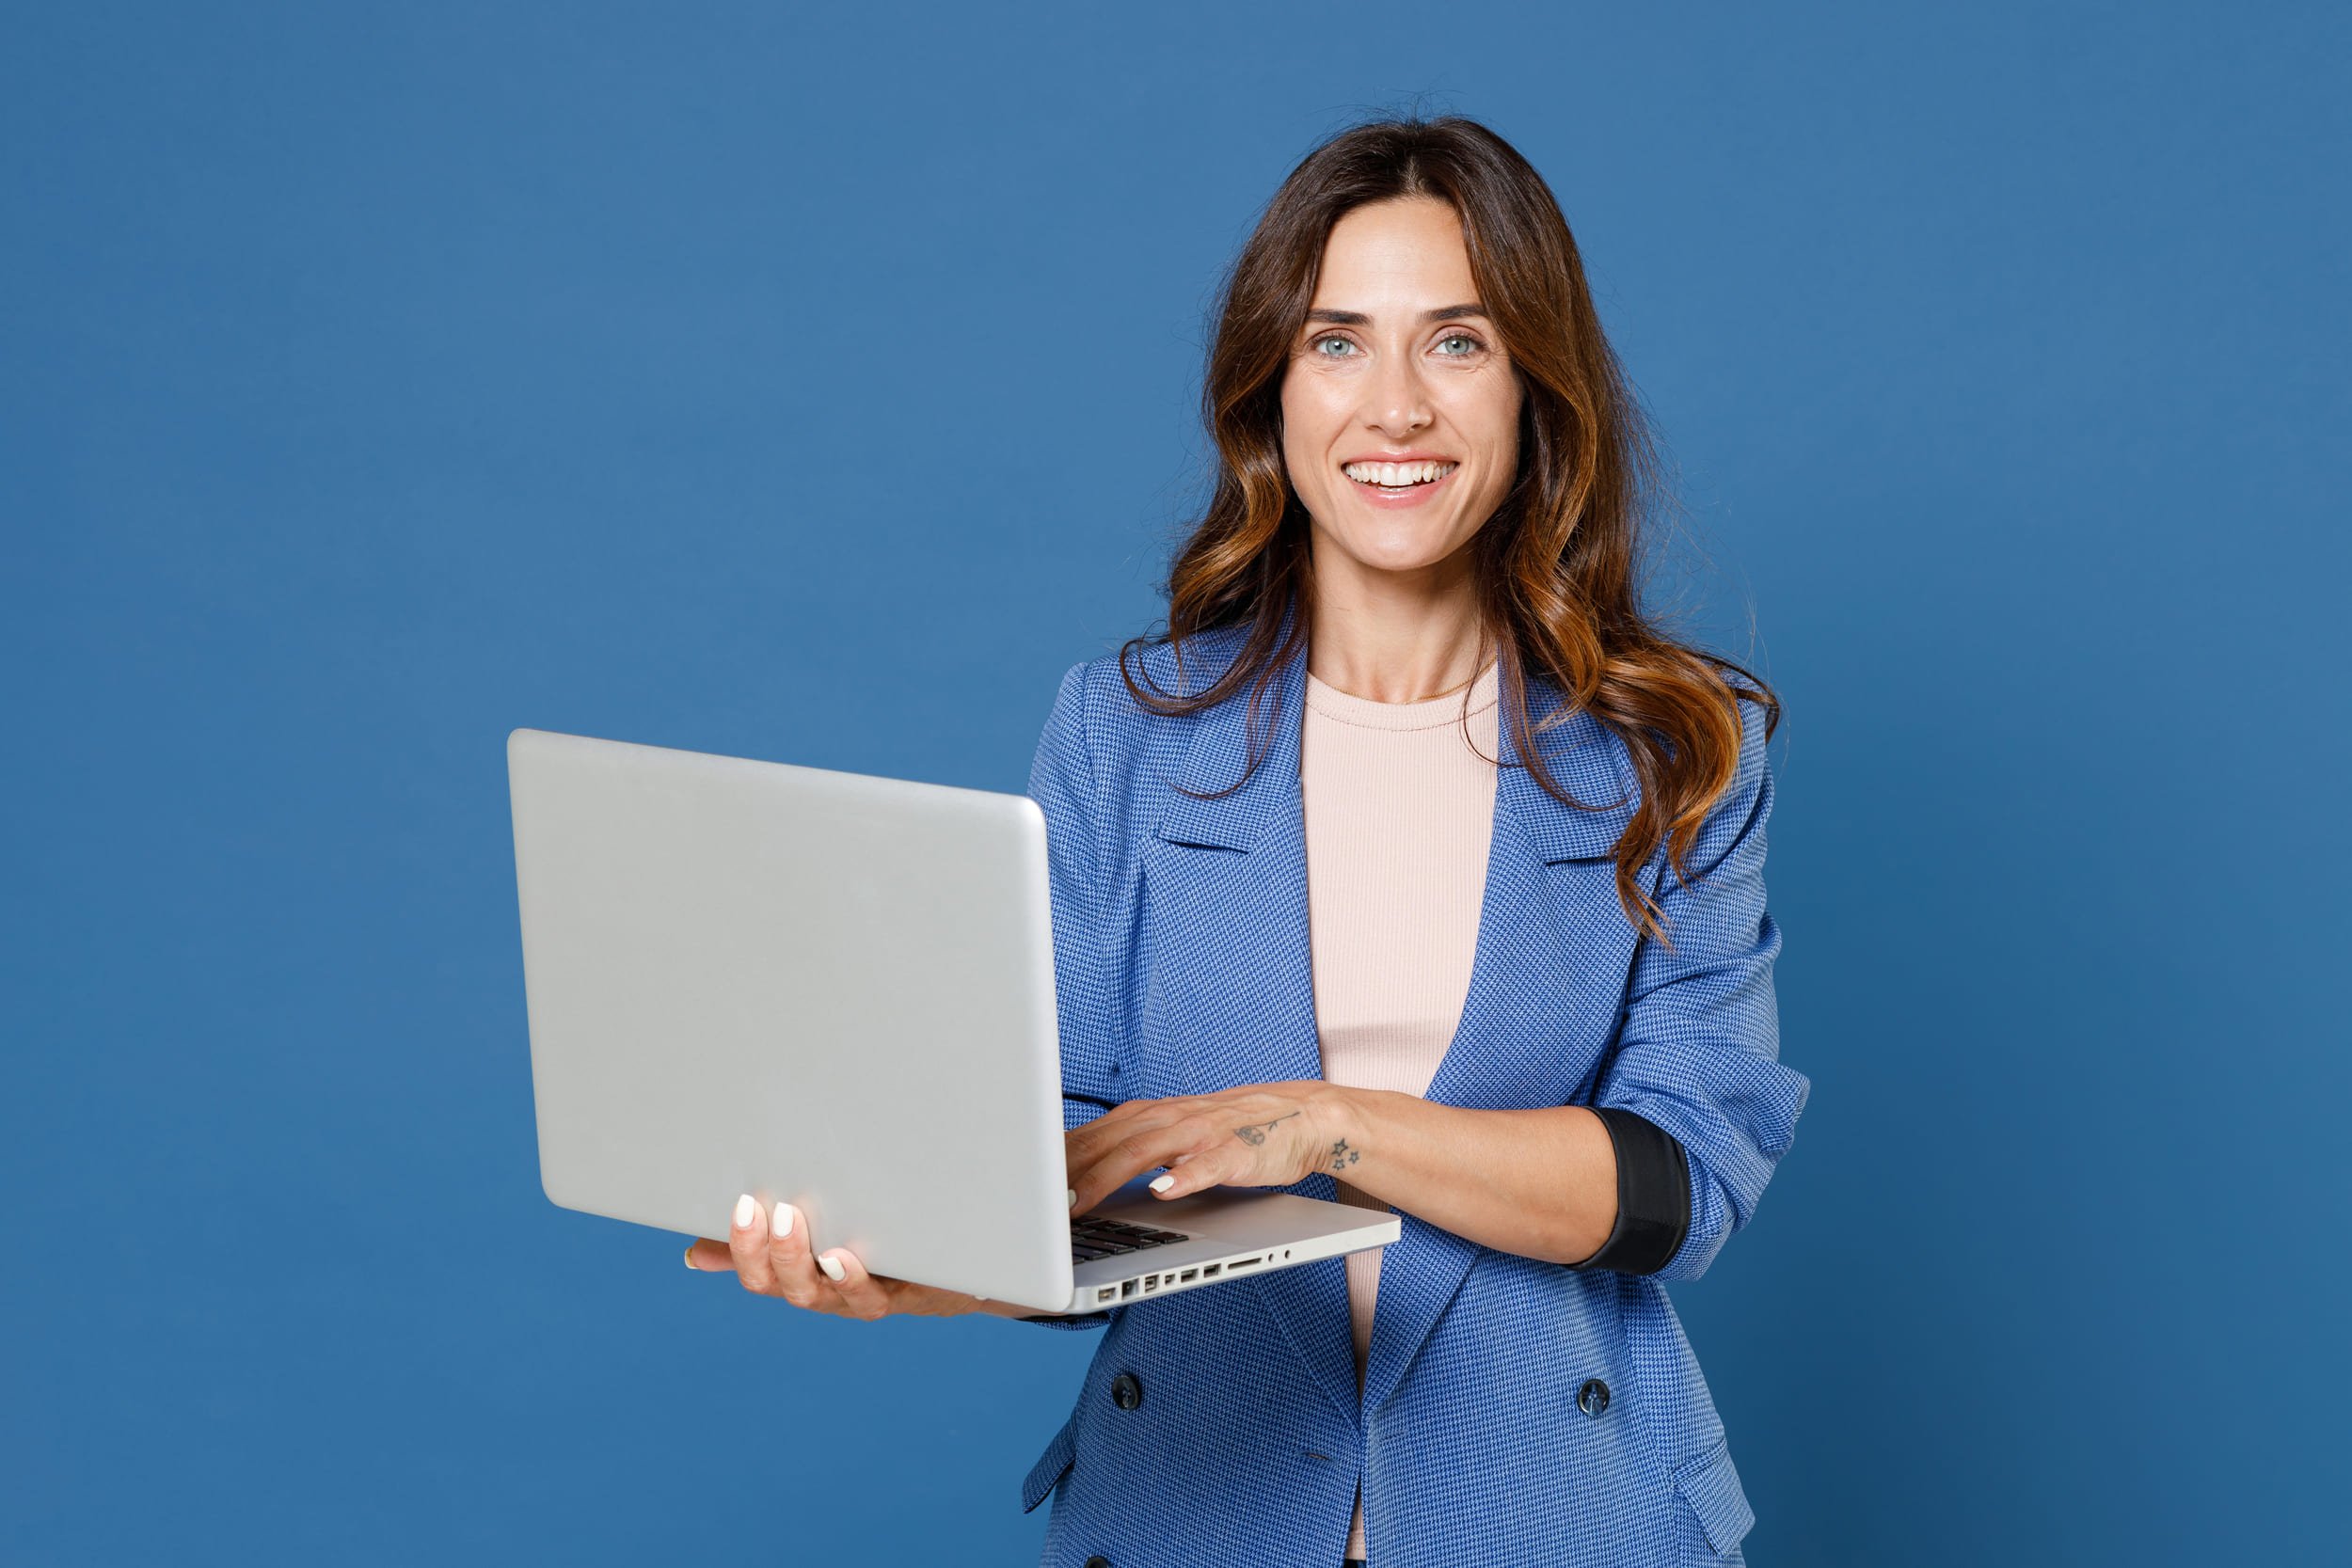 Femme debout avec le sourire et tenant son ordinateur portable ouvert